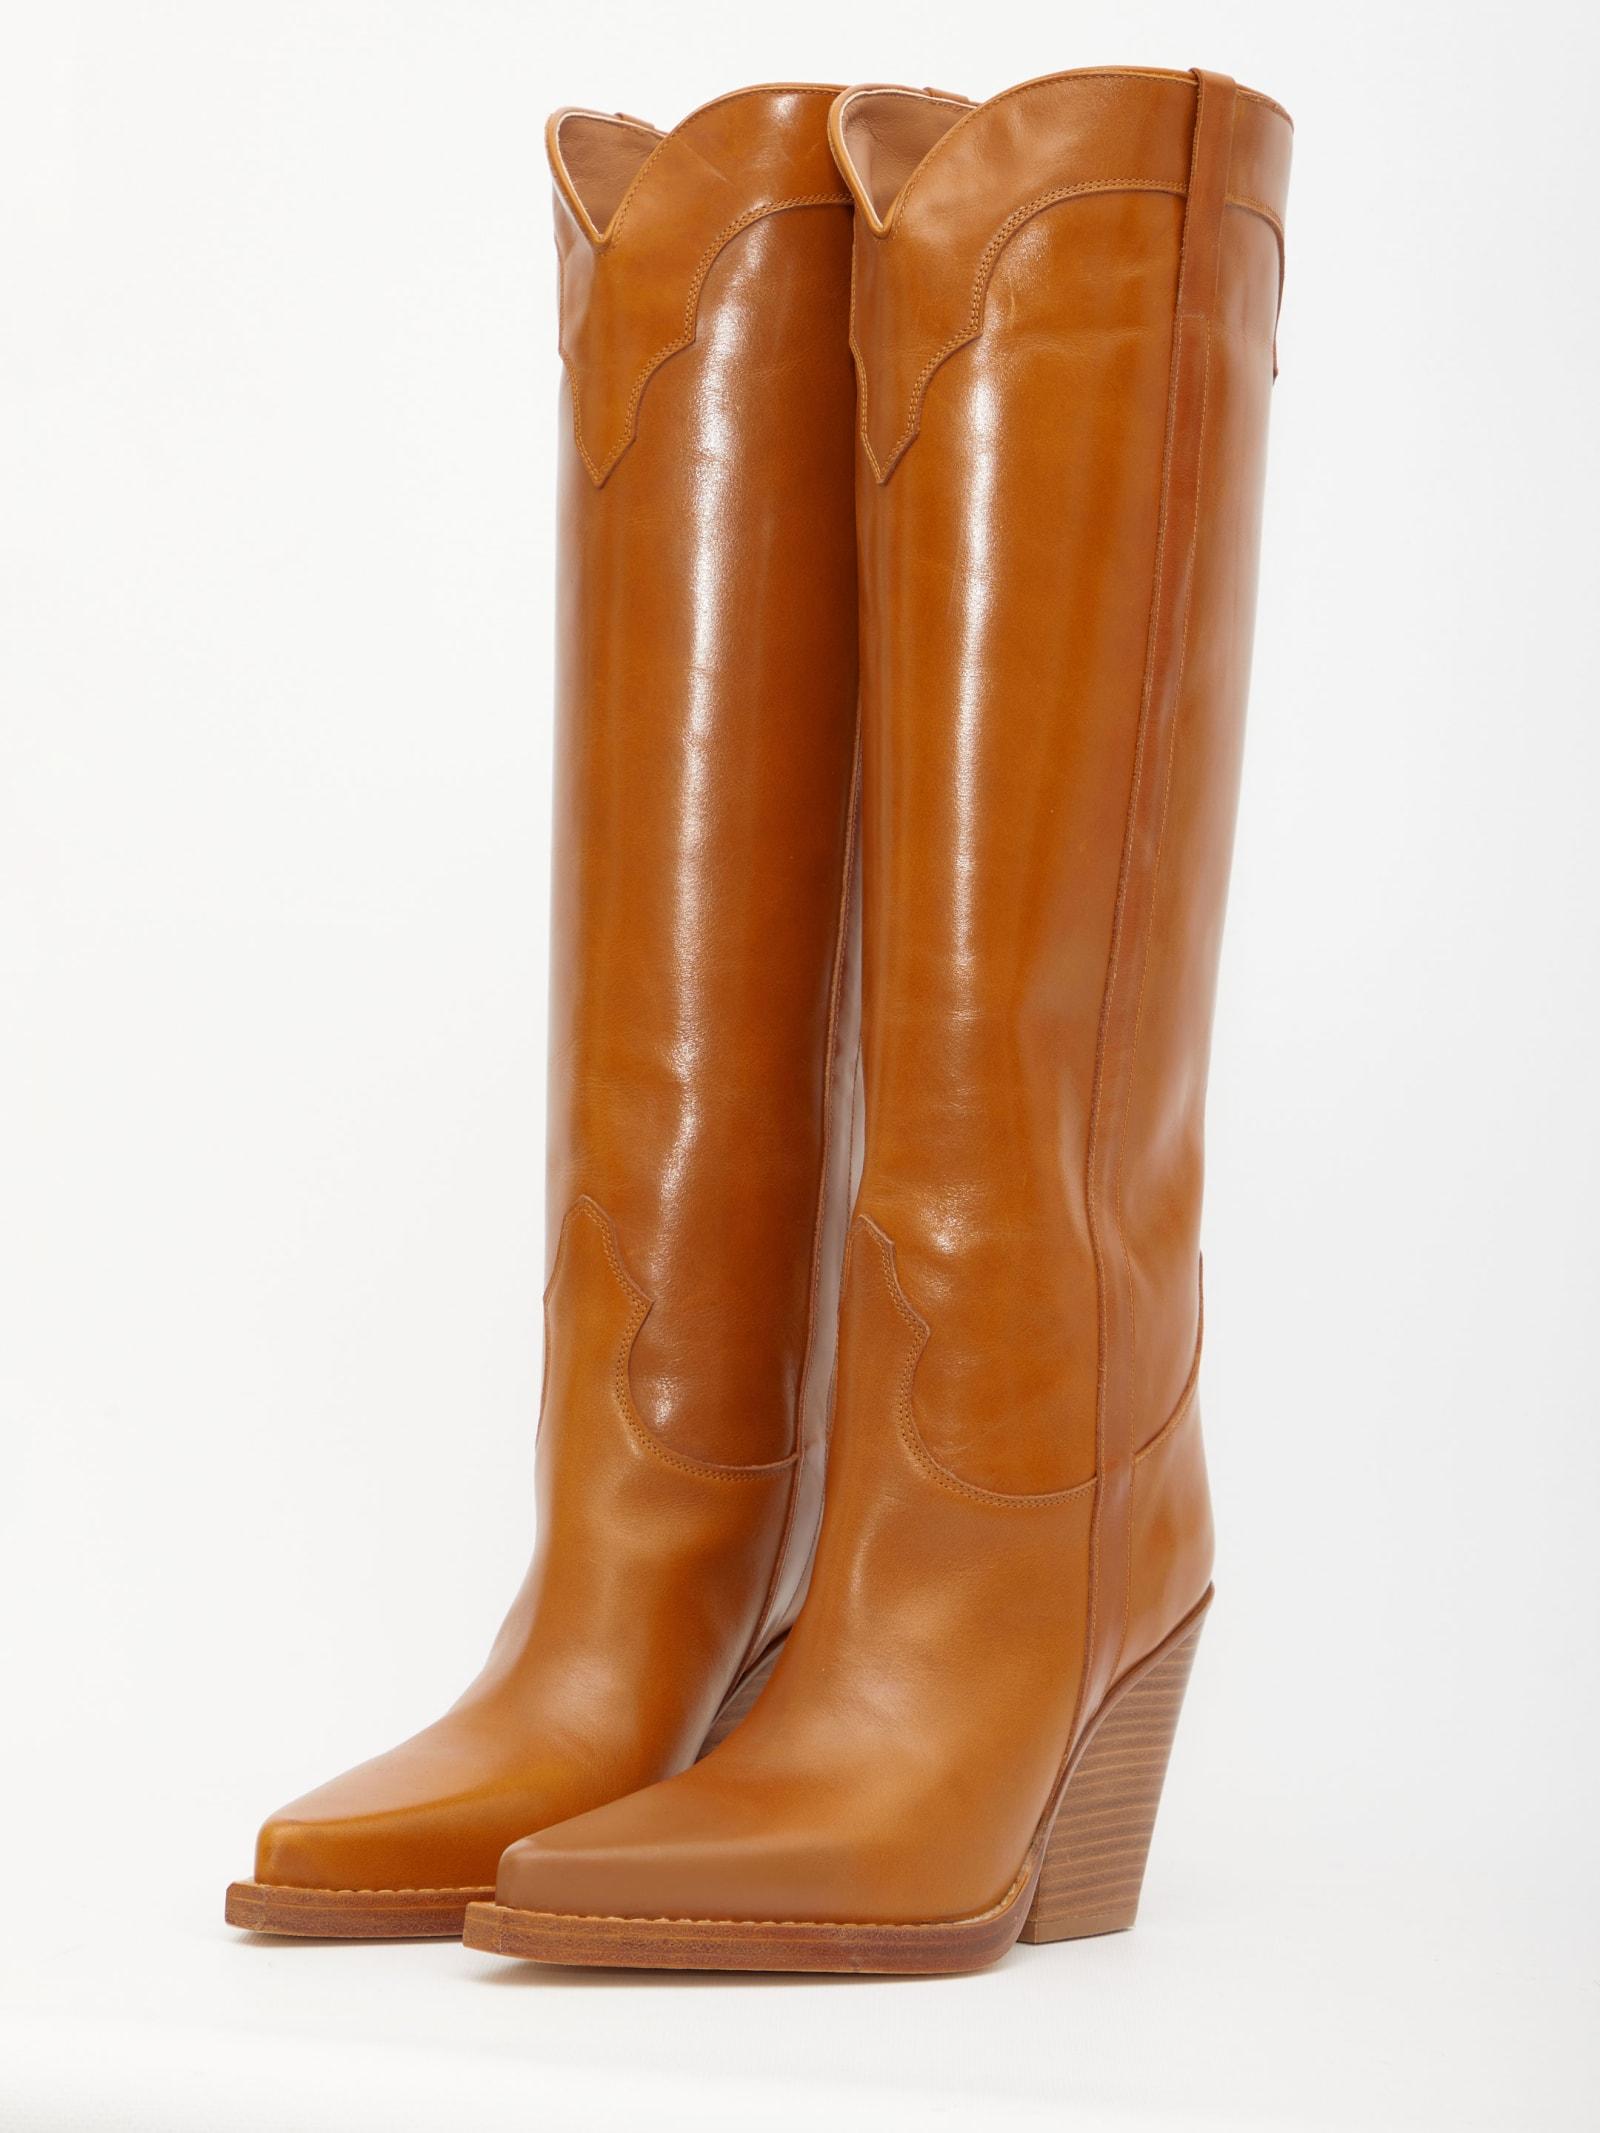 Paris Texas Leather El Dorado Boots in Brown - Save 12% | Lyst